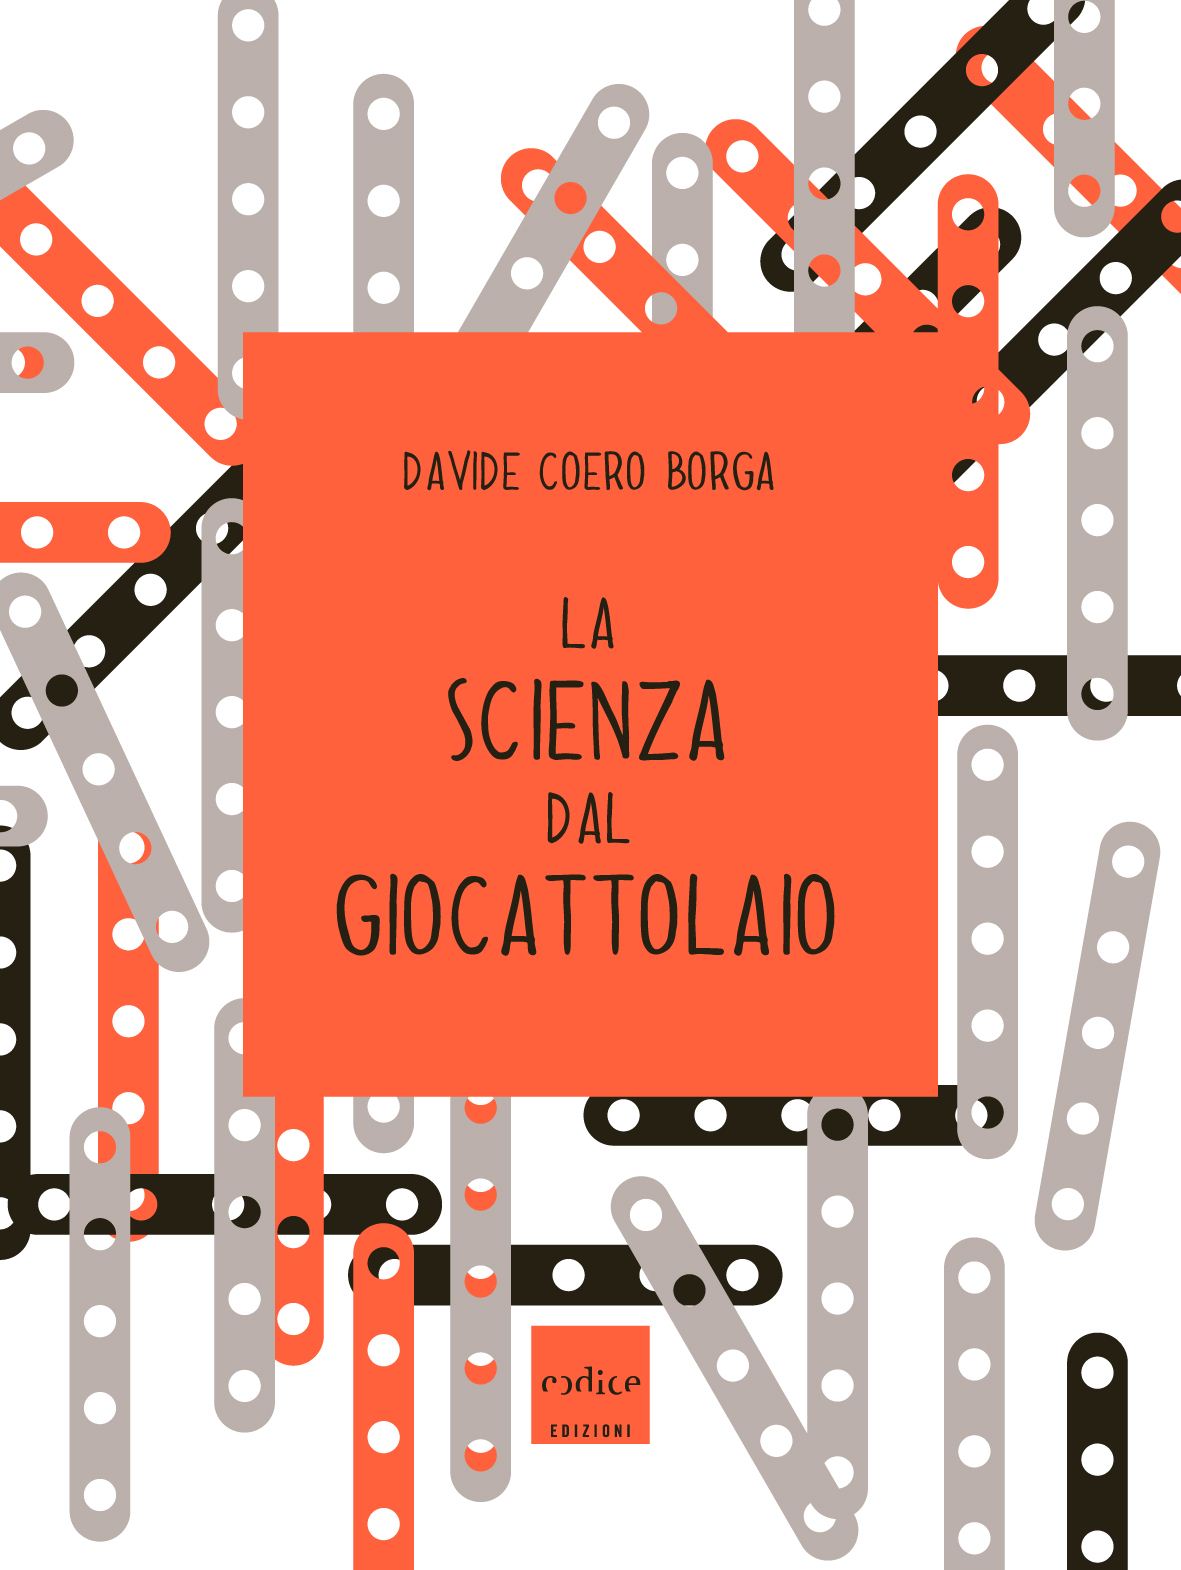 Davide Coero Borga - La scienza dal giocattolaio